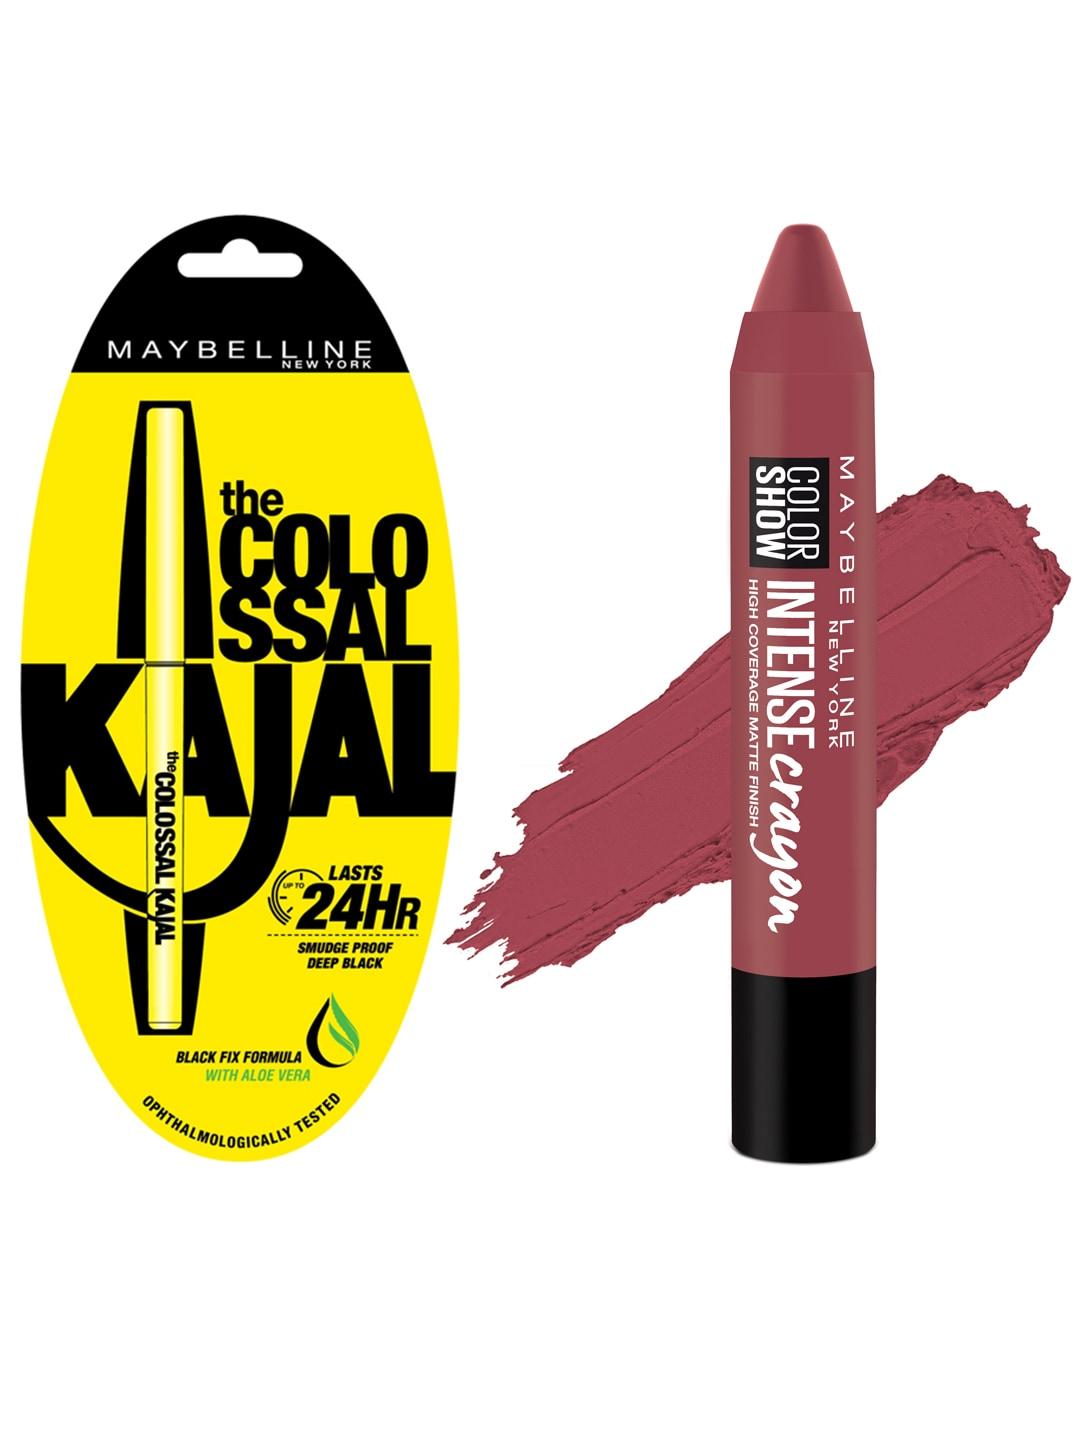 maybelline black colossal kajal & crayon mystic mauve lipstick